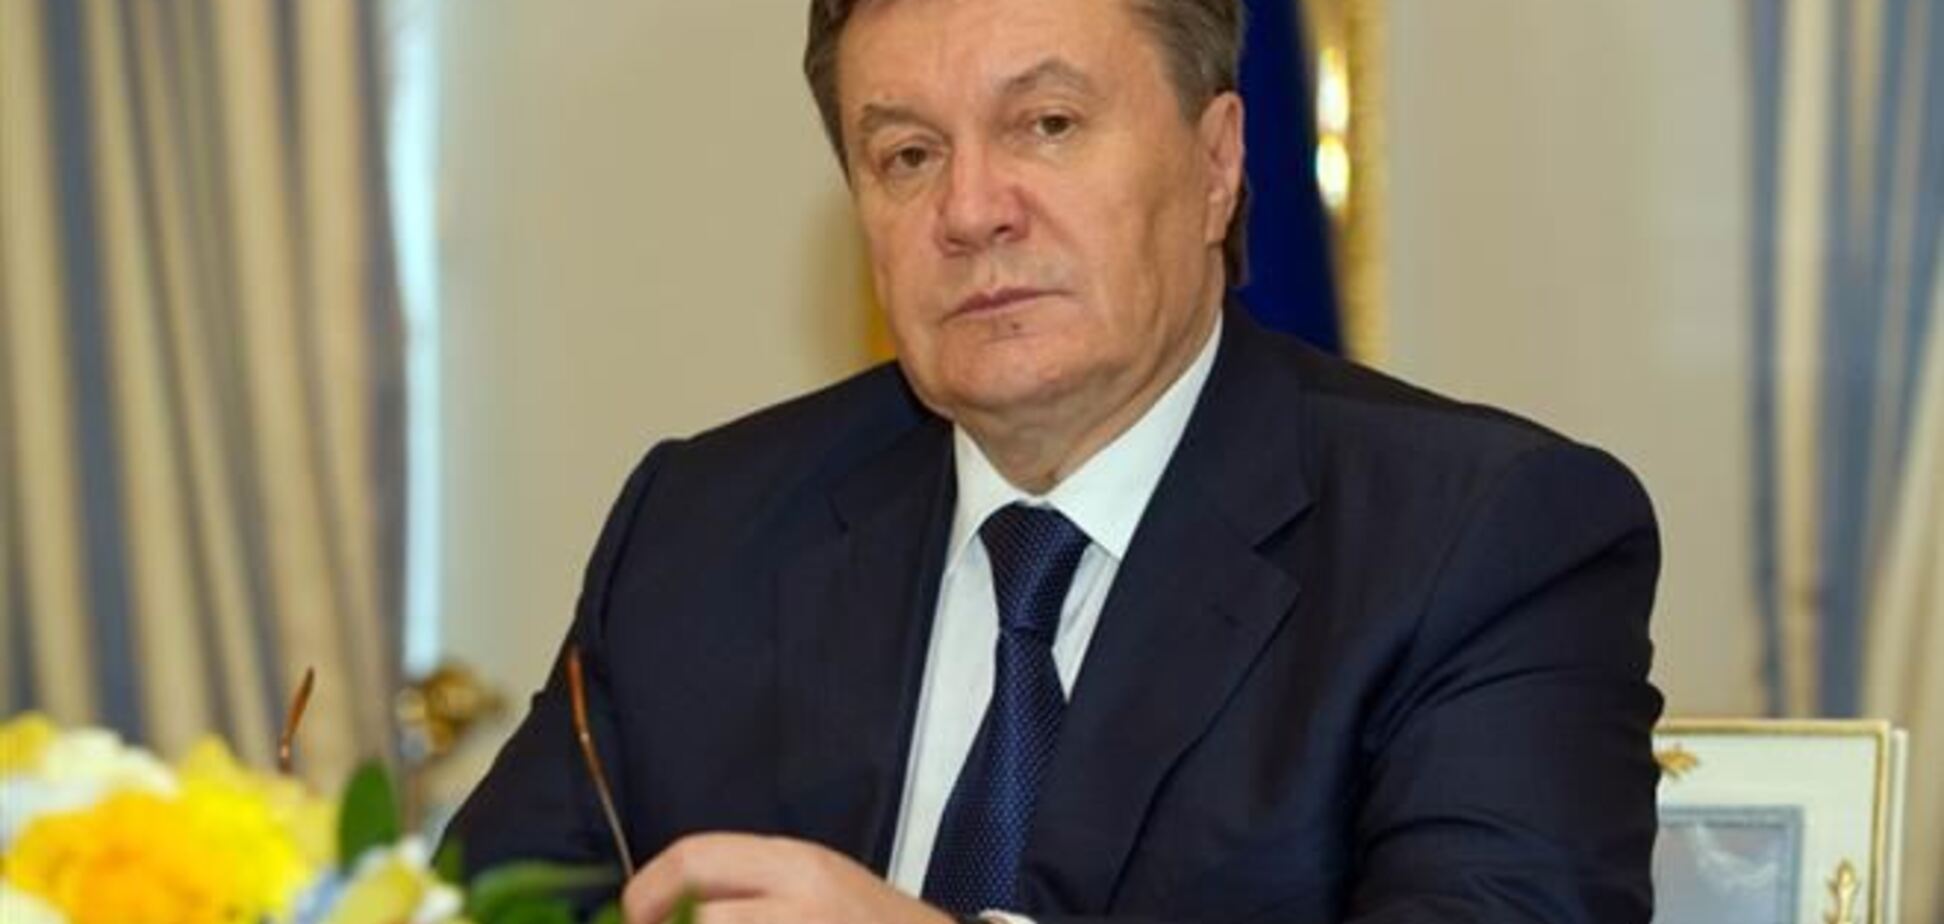 Януковича погубив патологічний страх - експерт